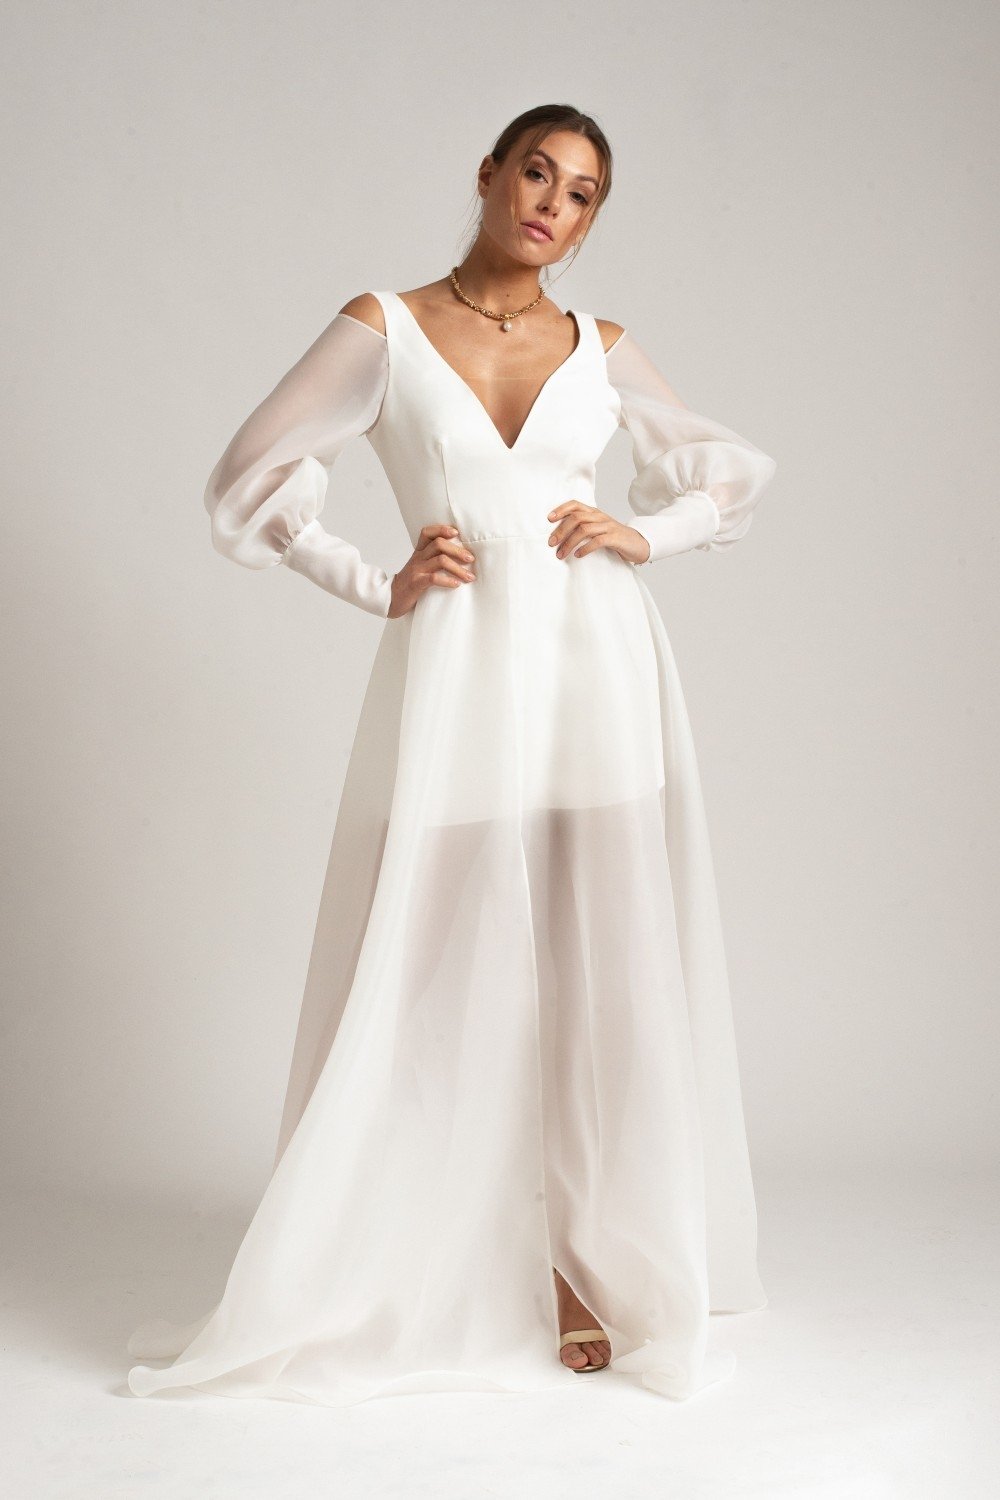 Momentum Connection Profession Dizainerės Agnės Deveikytės vestuvinių suknelių kolekcijoje – elegancija ir  moteriškas trapumas - DELFI Stilius